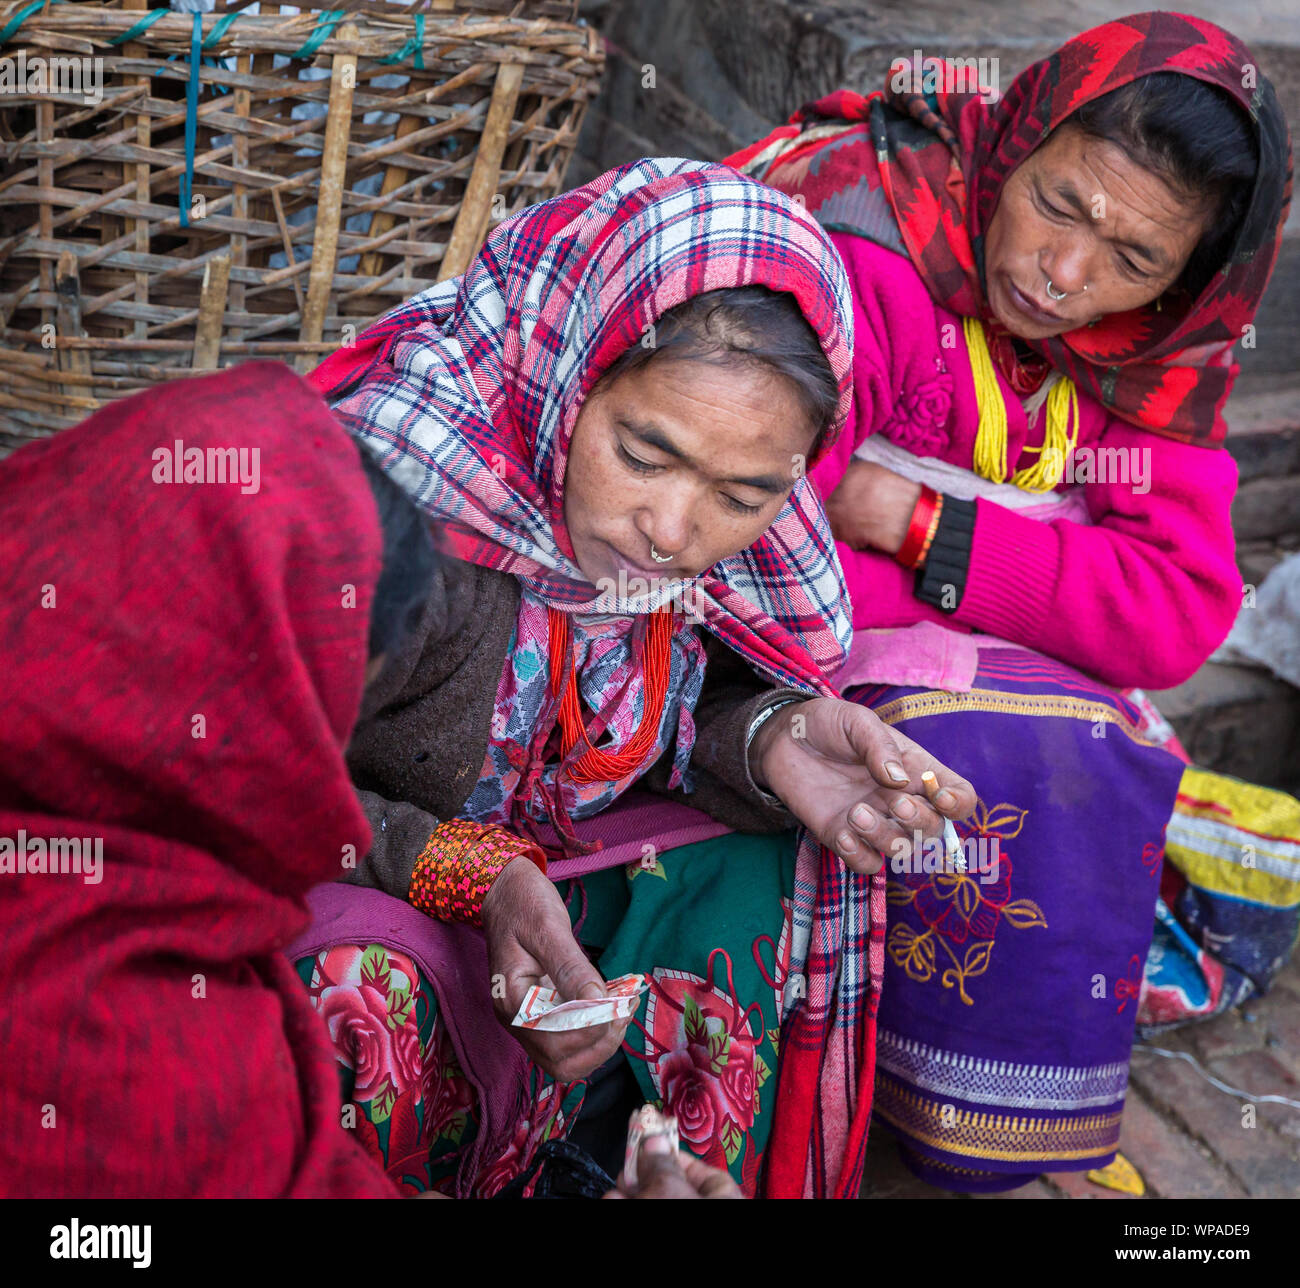 Women exchanging money, Bhaktapur, Nepal Stock Photo